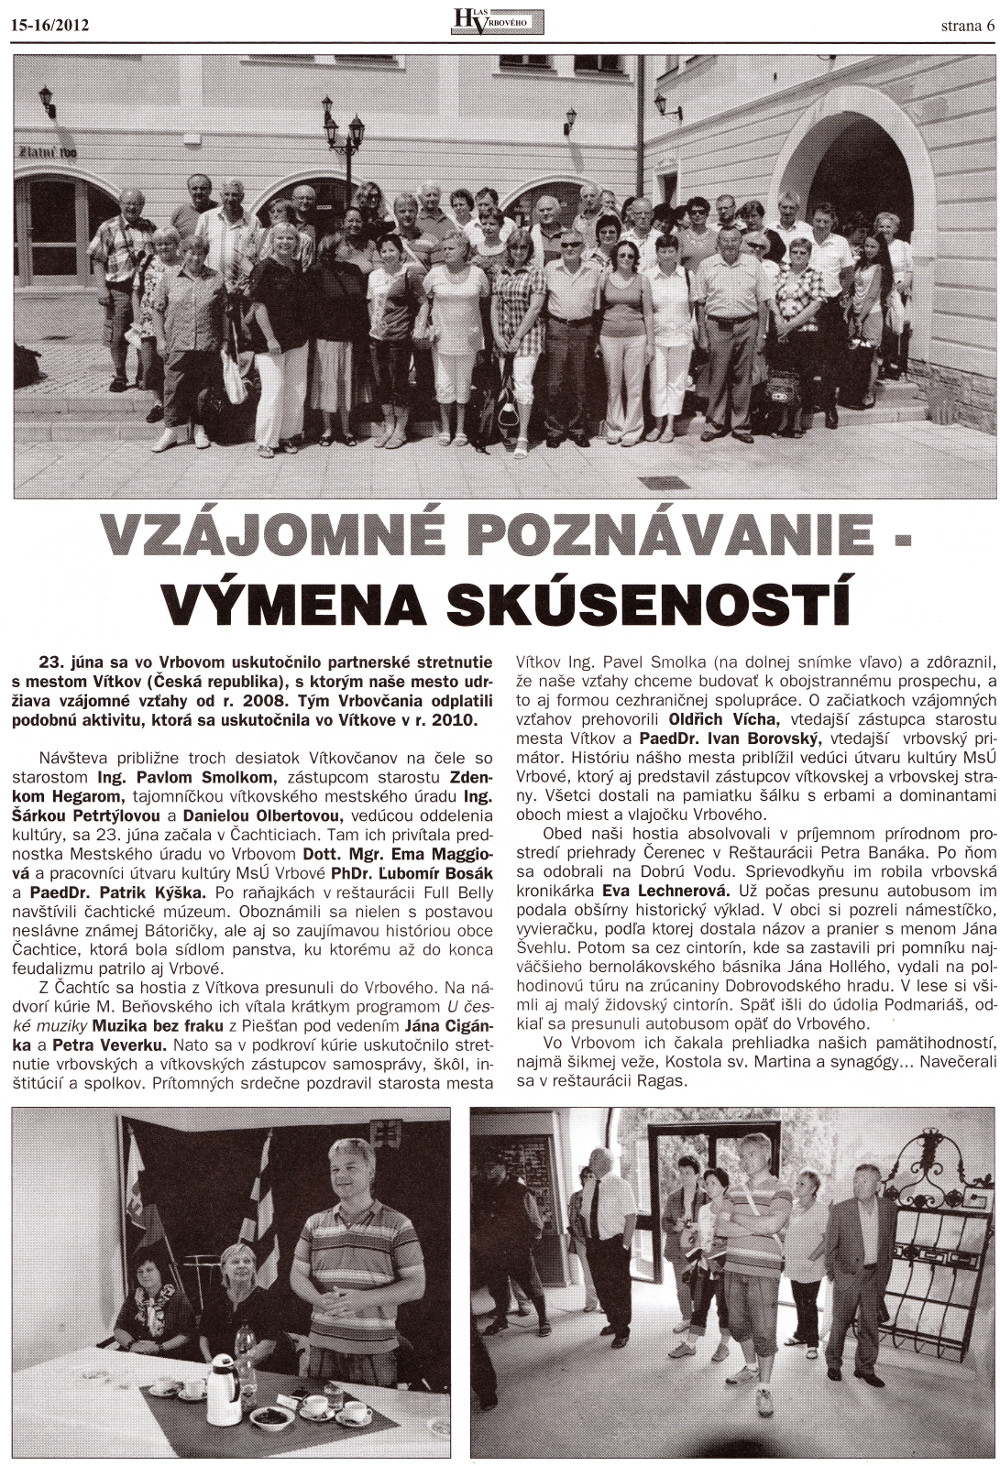 Hlas Vrbového 15-16/2012, strana 6